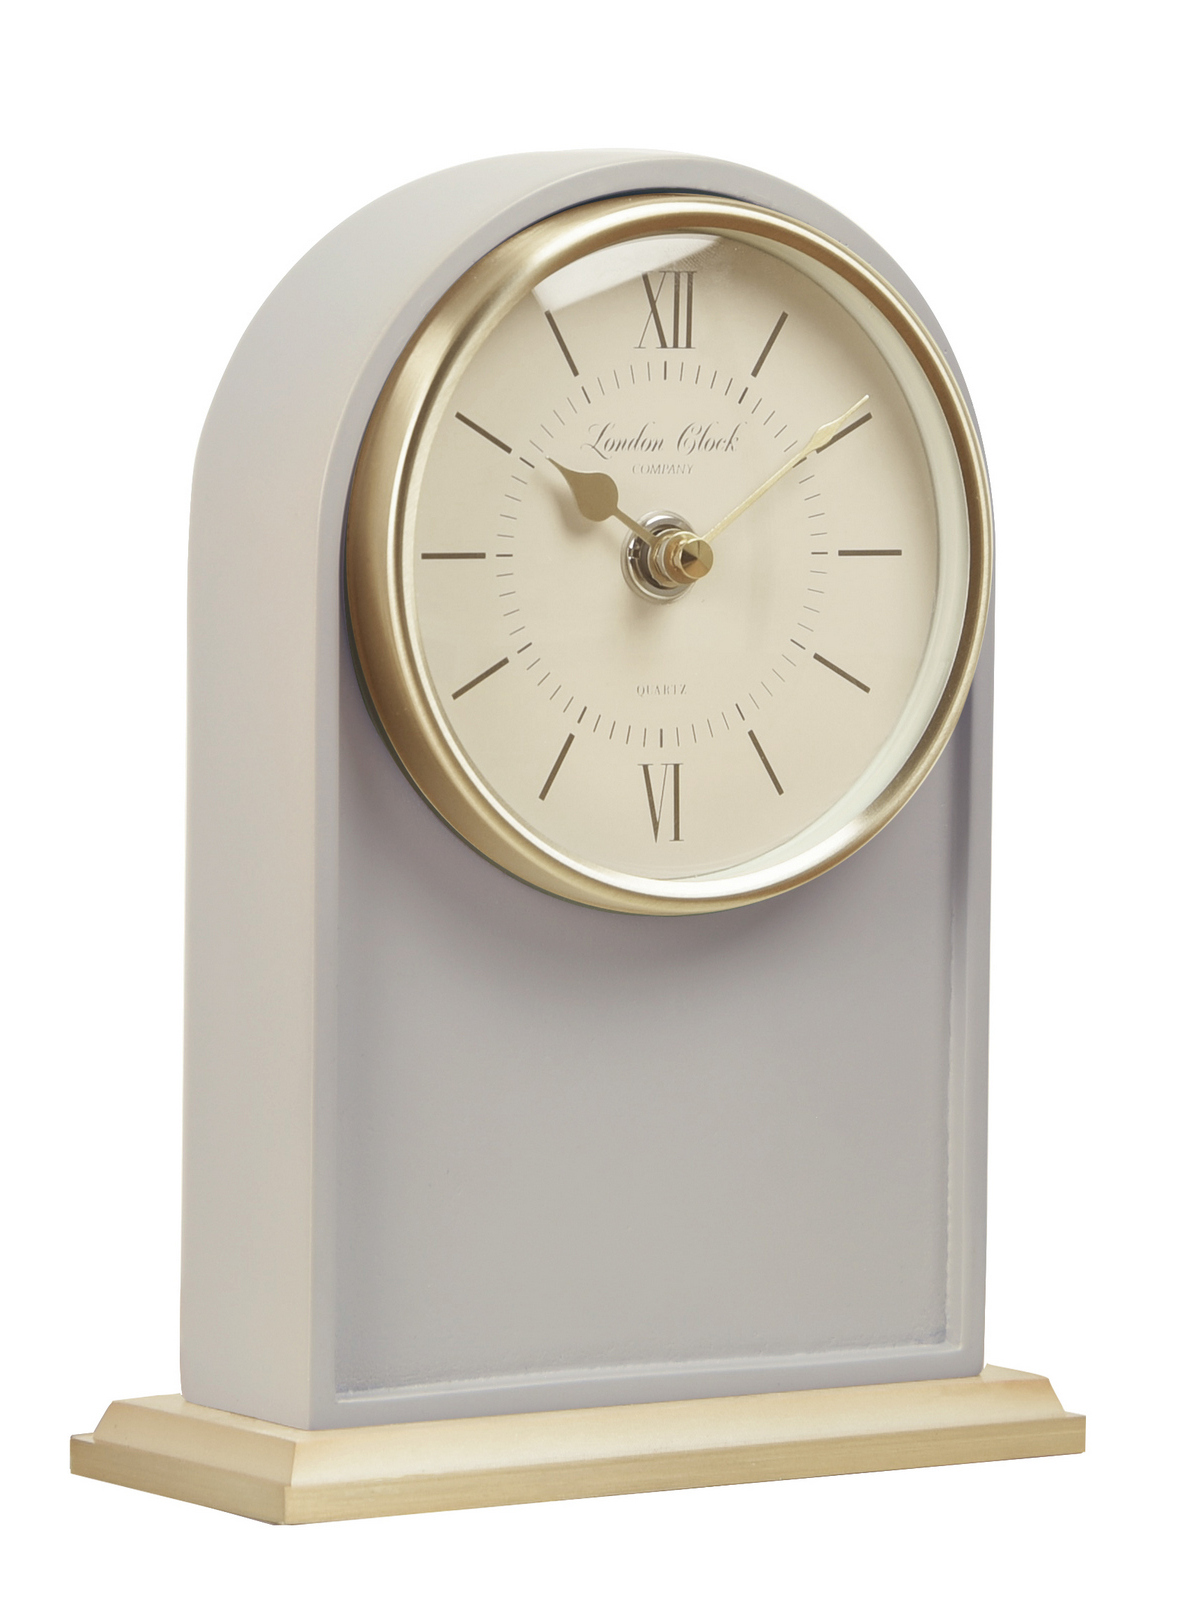 Часы настольные минута. Часы London Clock. Часы London Clock 34366 LC Designs. Часы настольные современные. Оригинальные настольные часы.